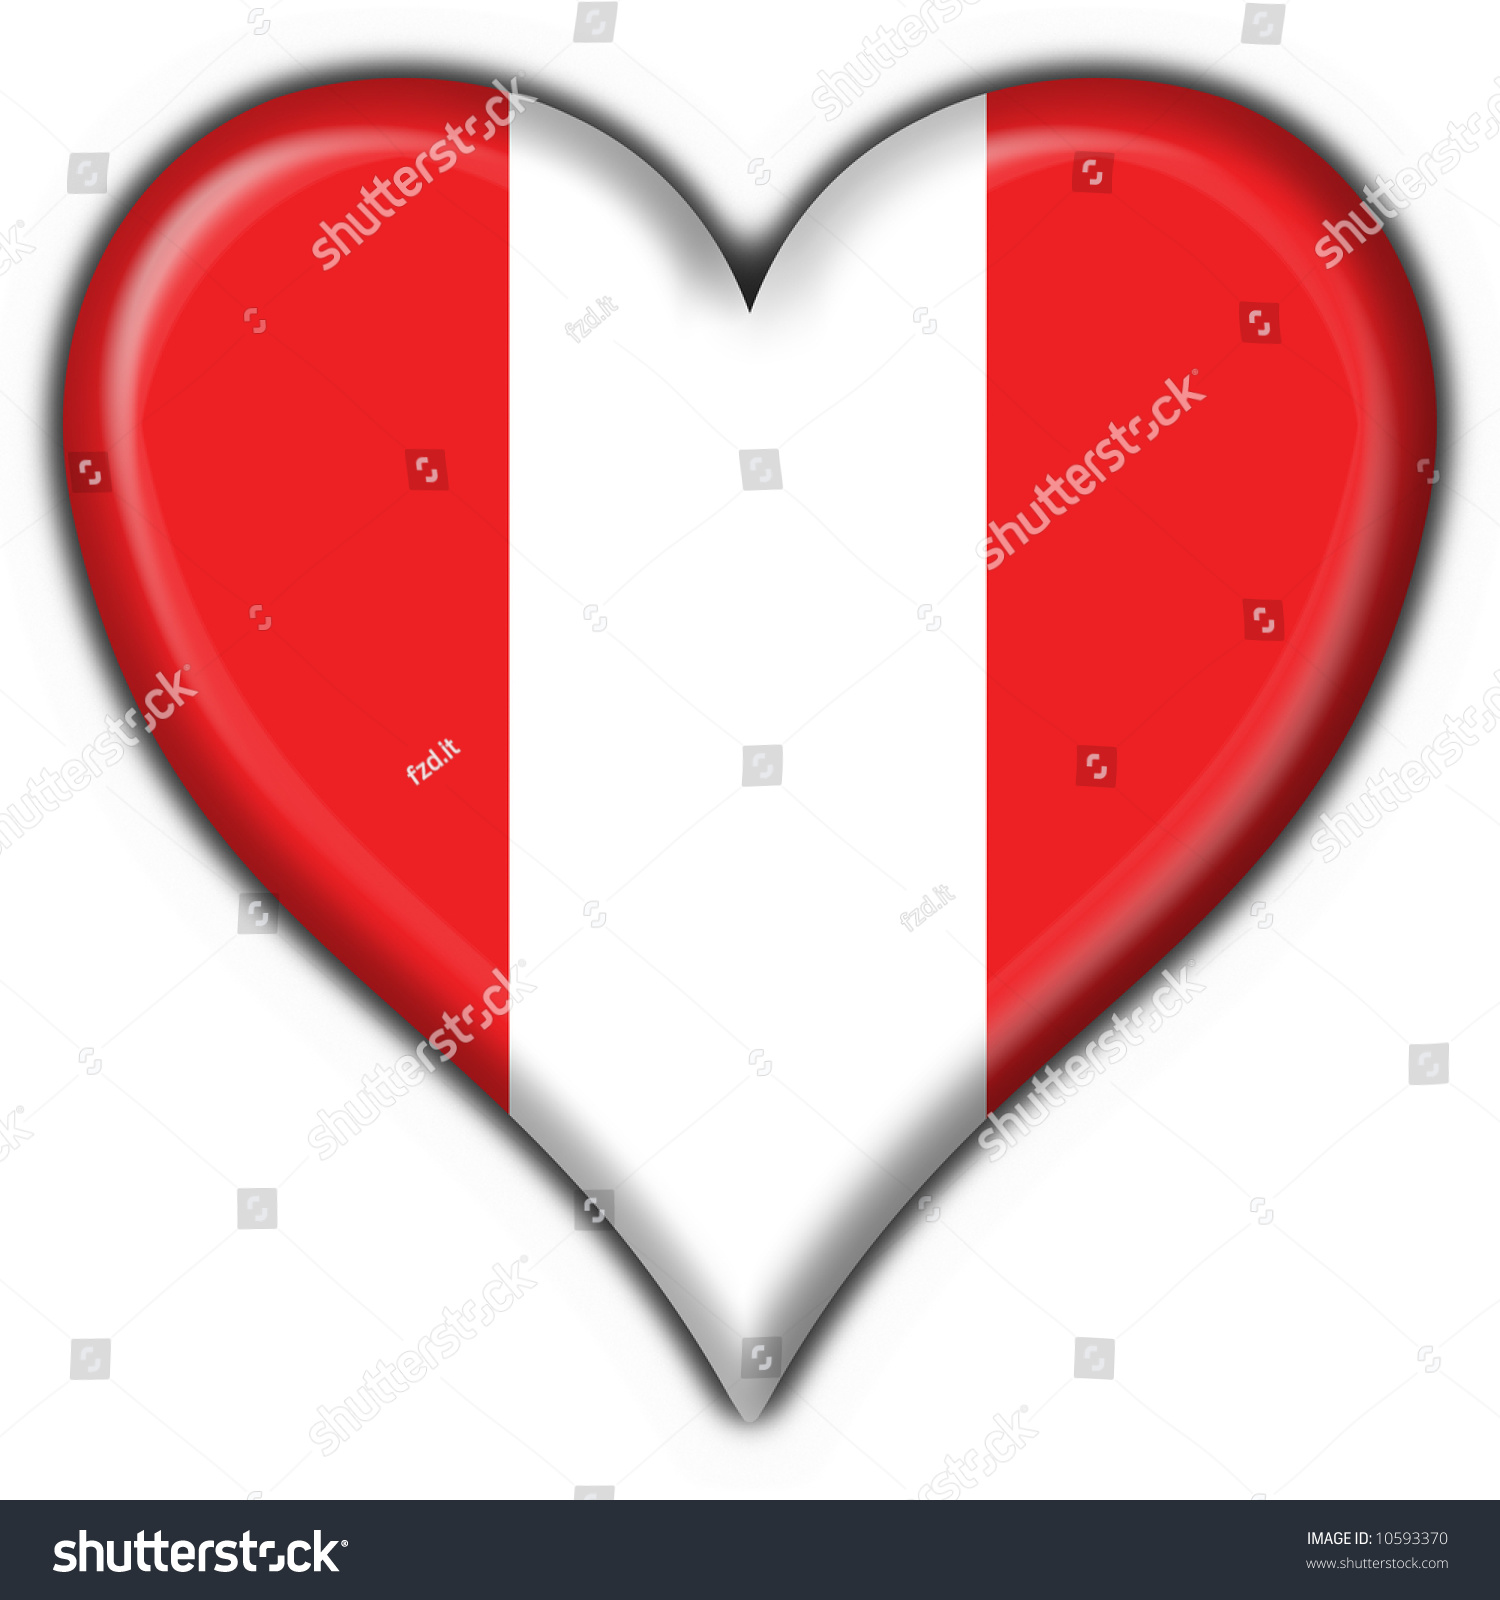 Peru Button Flag Heart Shape Stock Photo 10593370 : Shutterstock